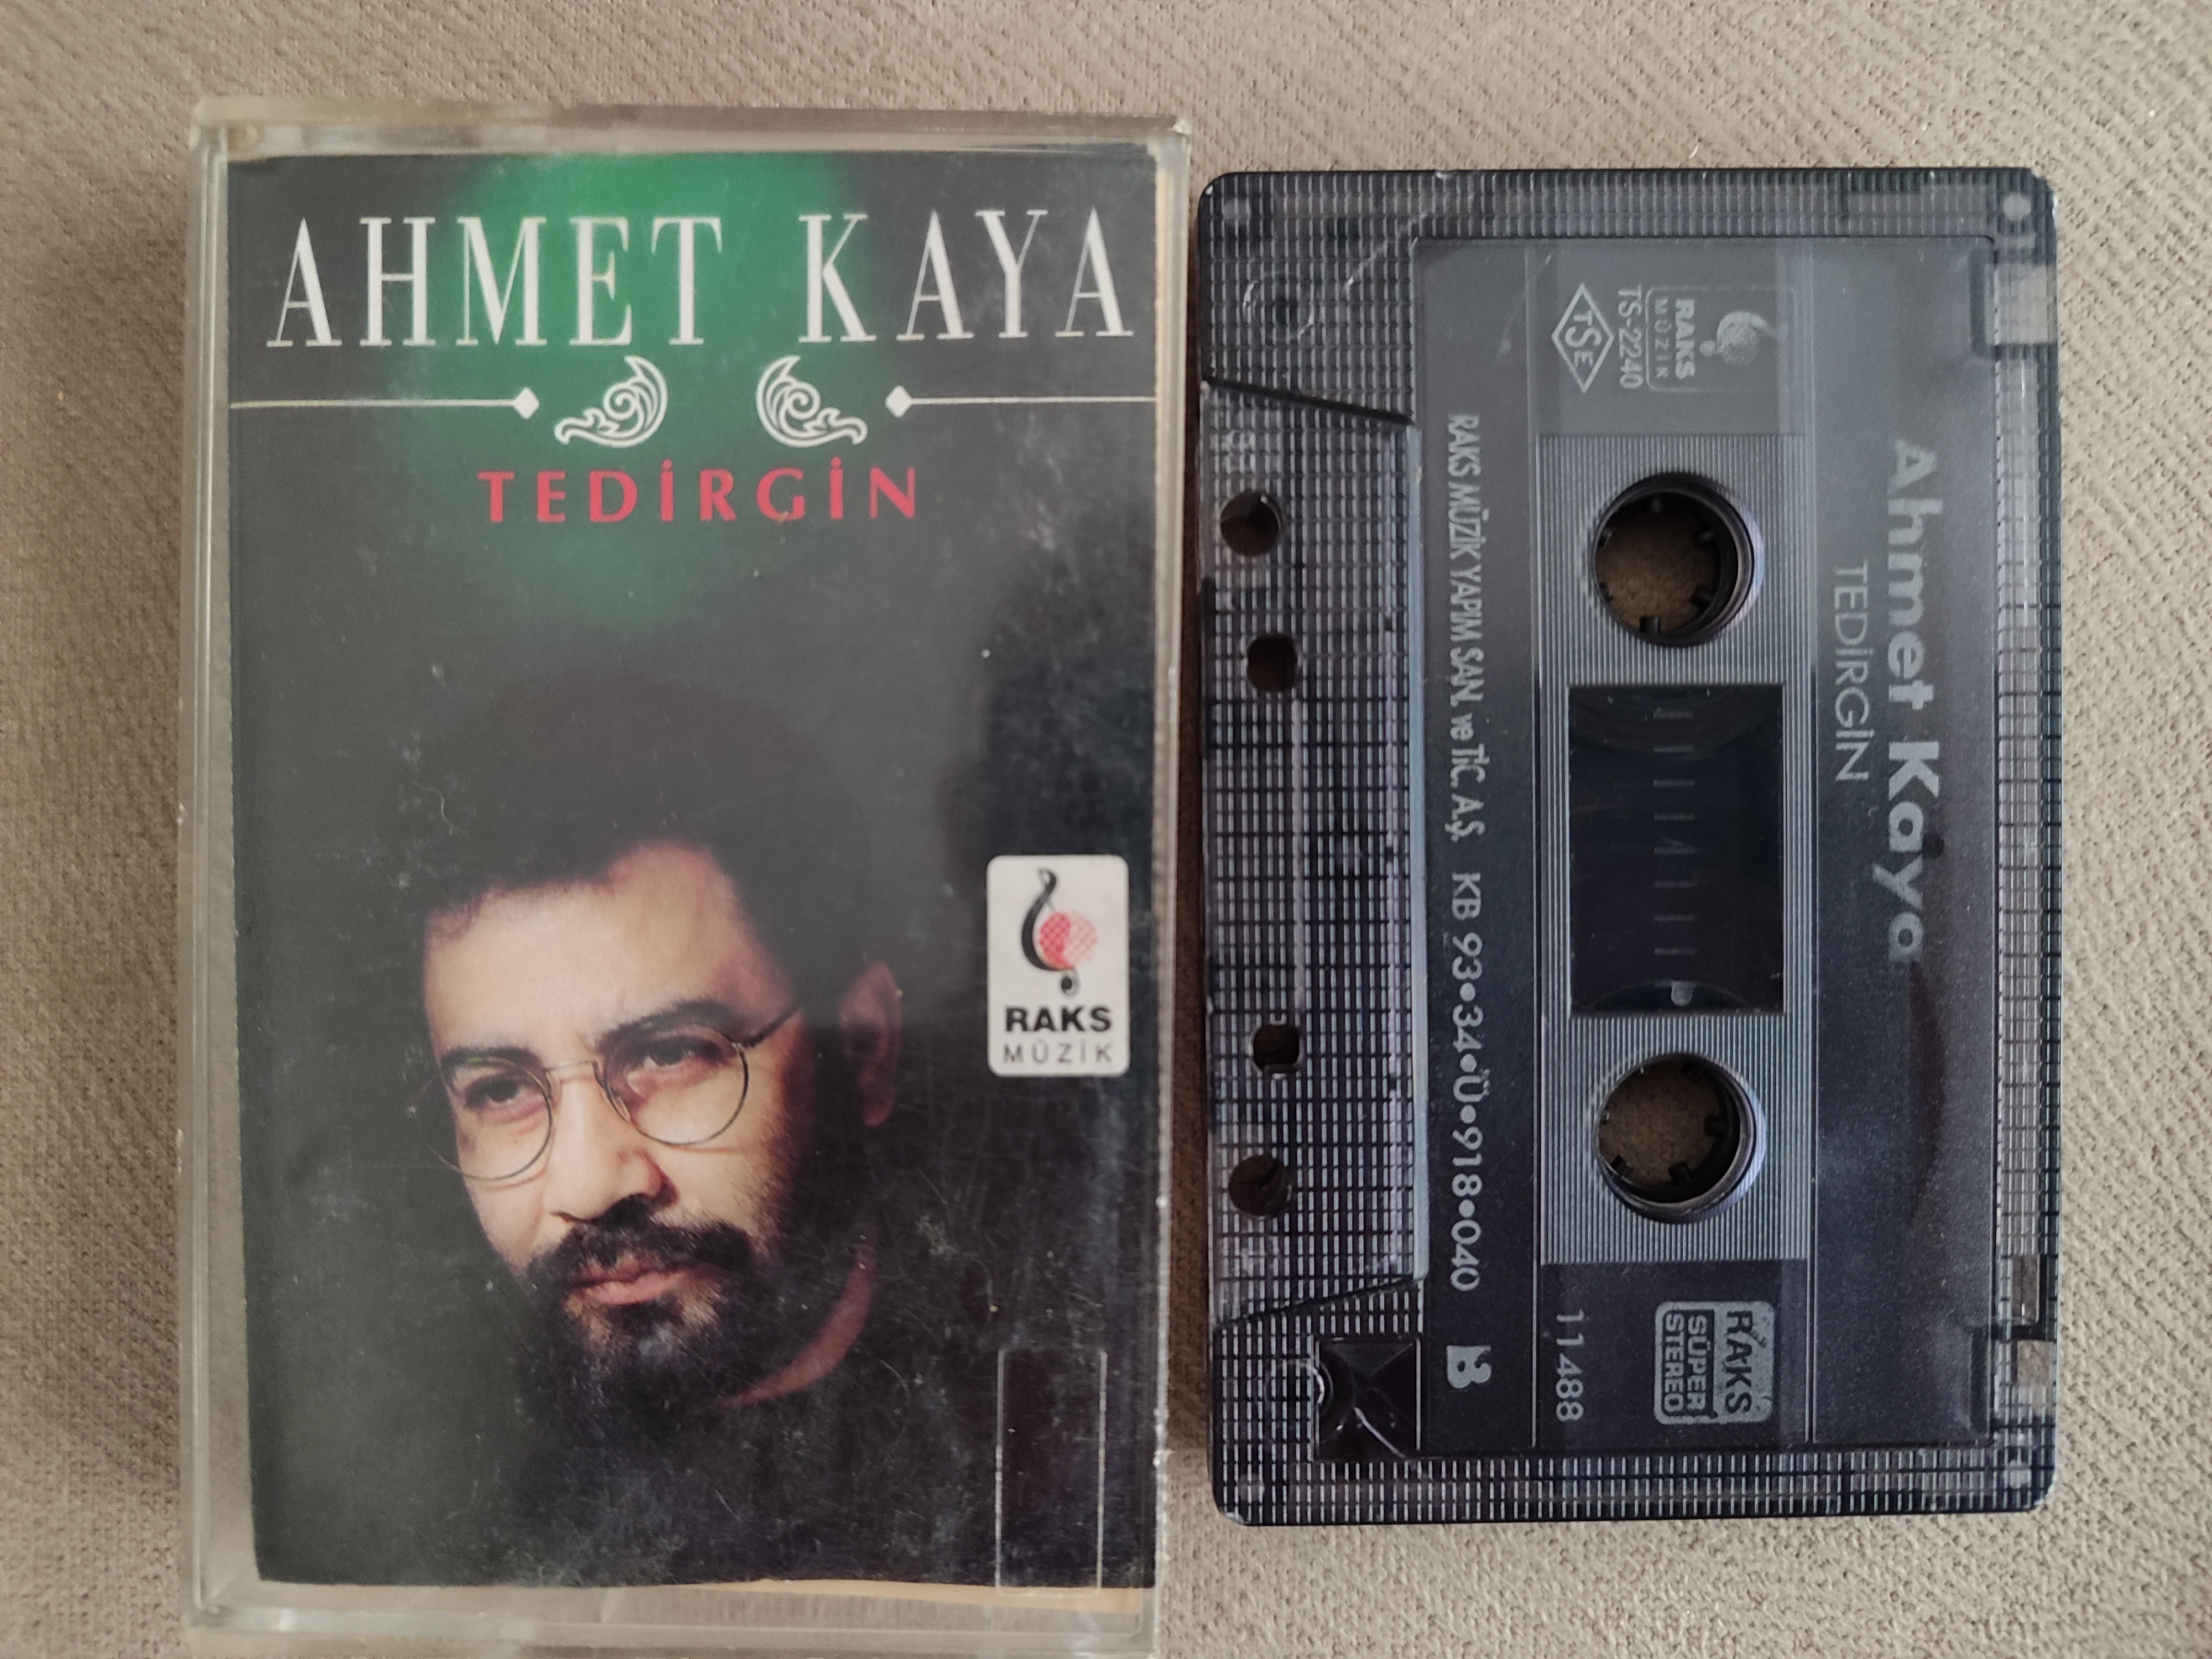 AHMET KAYA - Tedirgin - 1993 Türkiye Basım Kaset Albüm 2. el